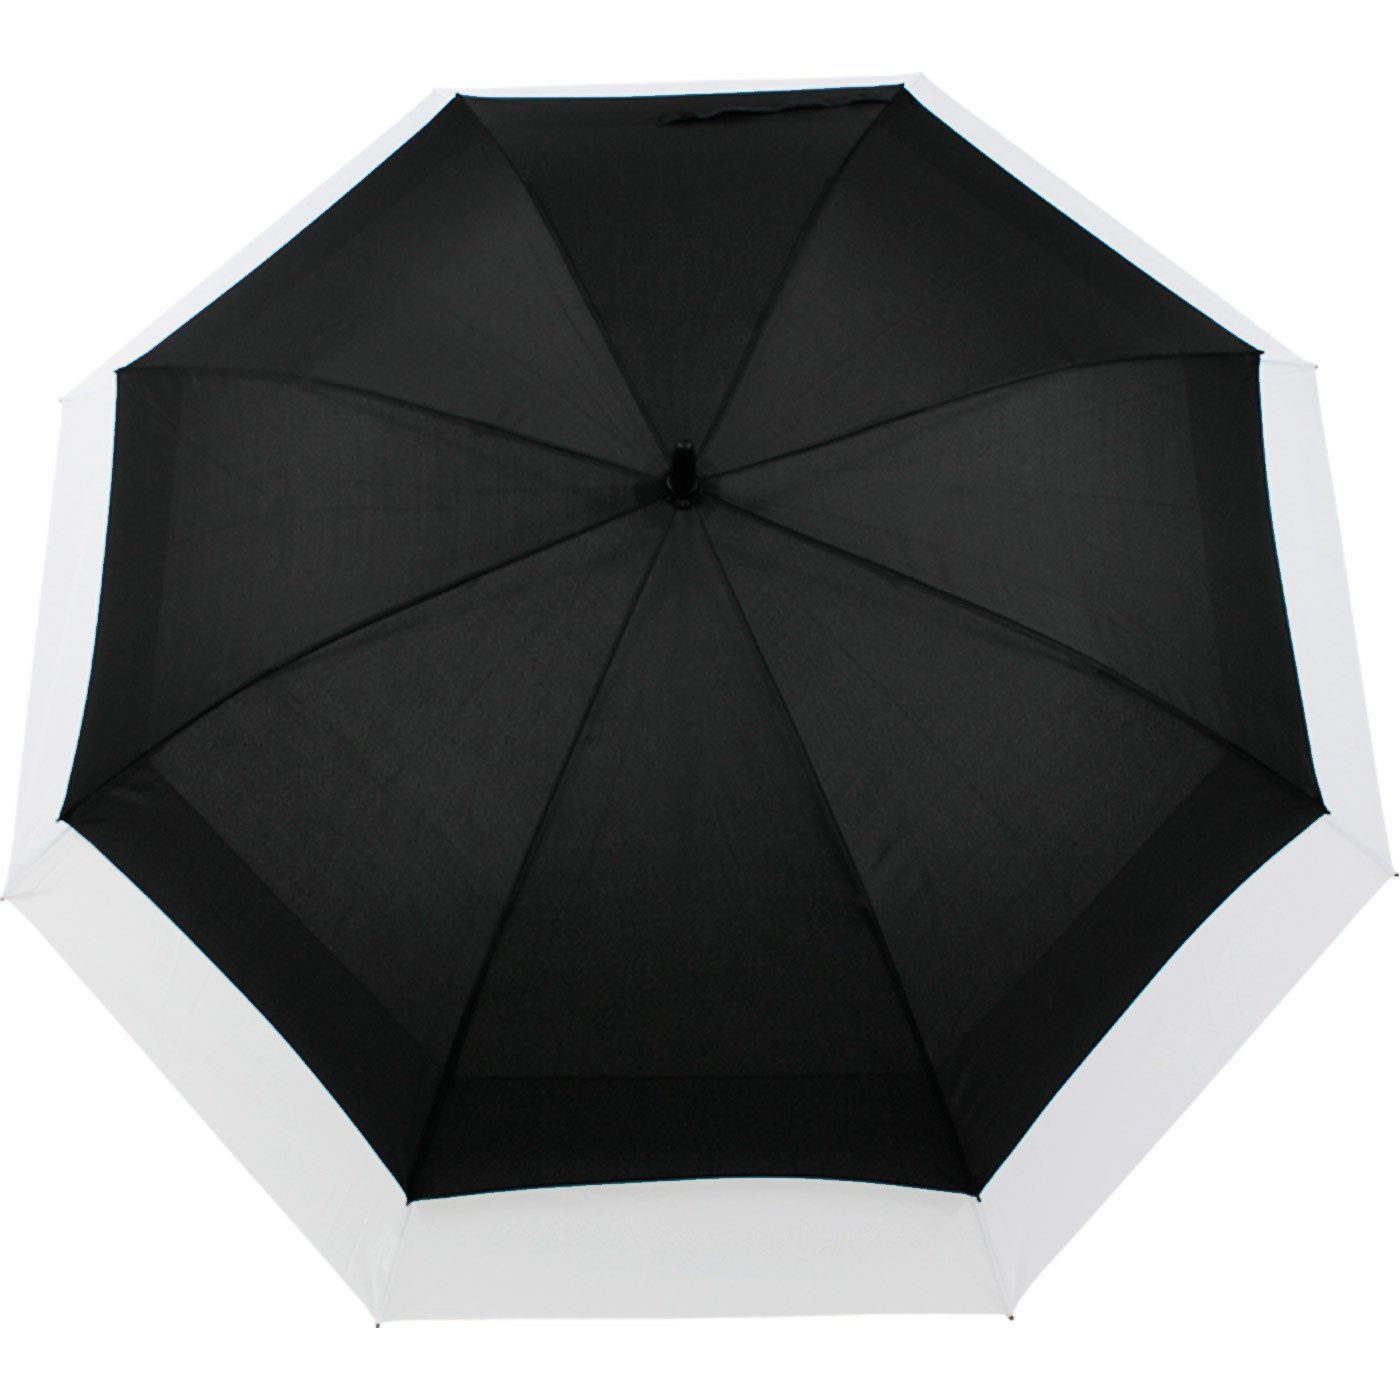 Automatik, - Schirm iX-brella to expandierender mit schwarz-weiß XXL Move zweifarbig Langregenschirm